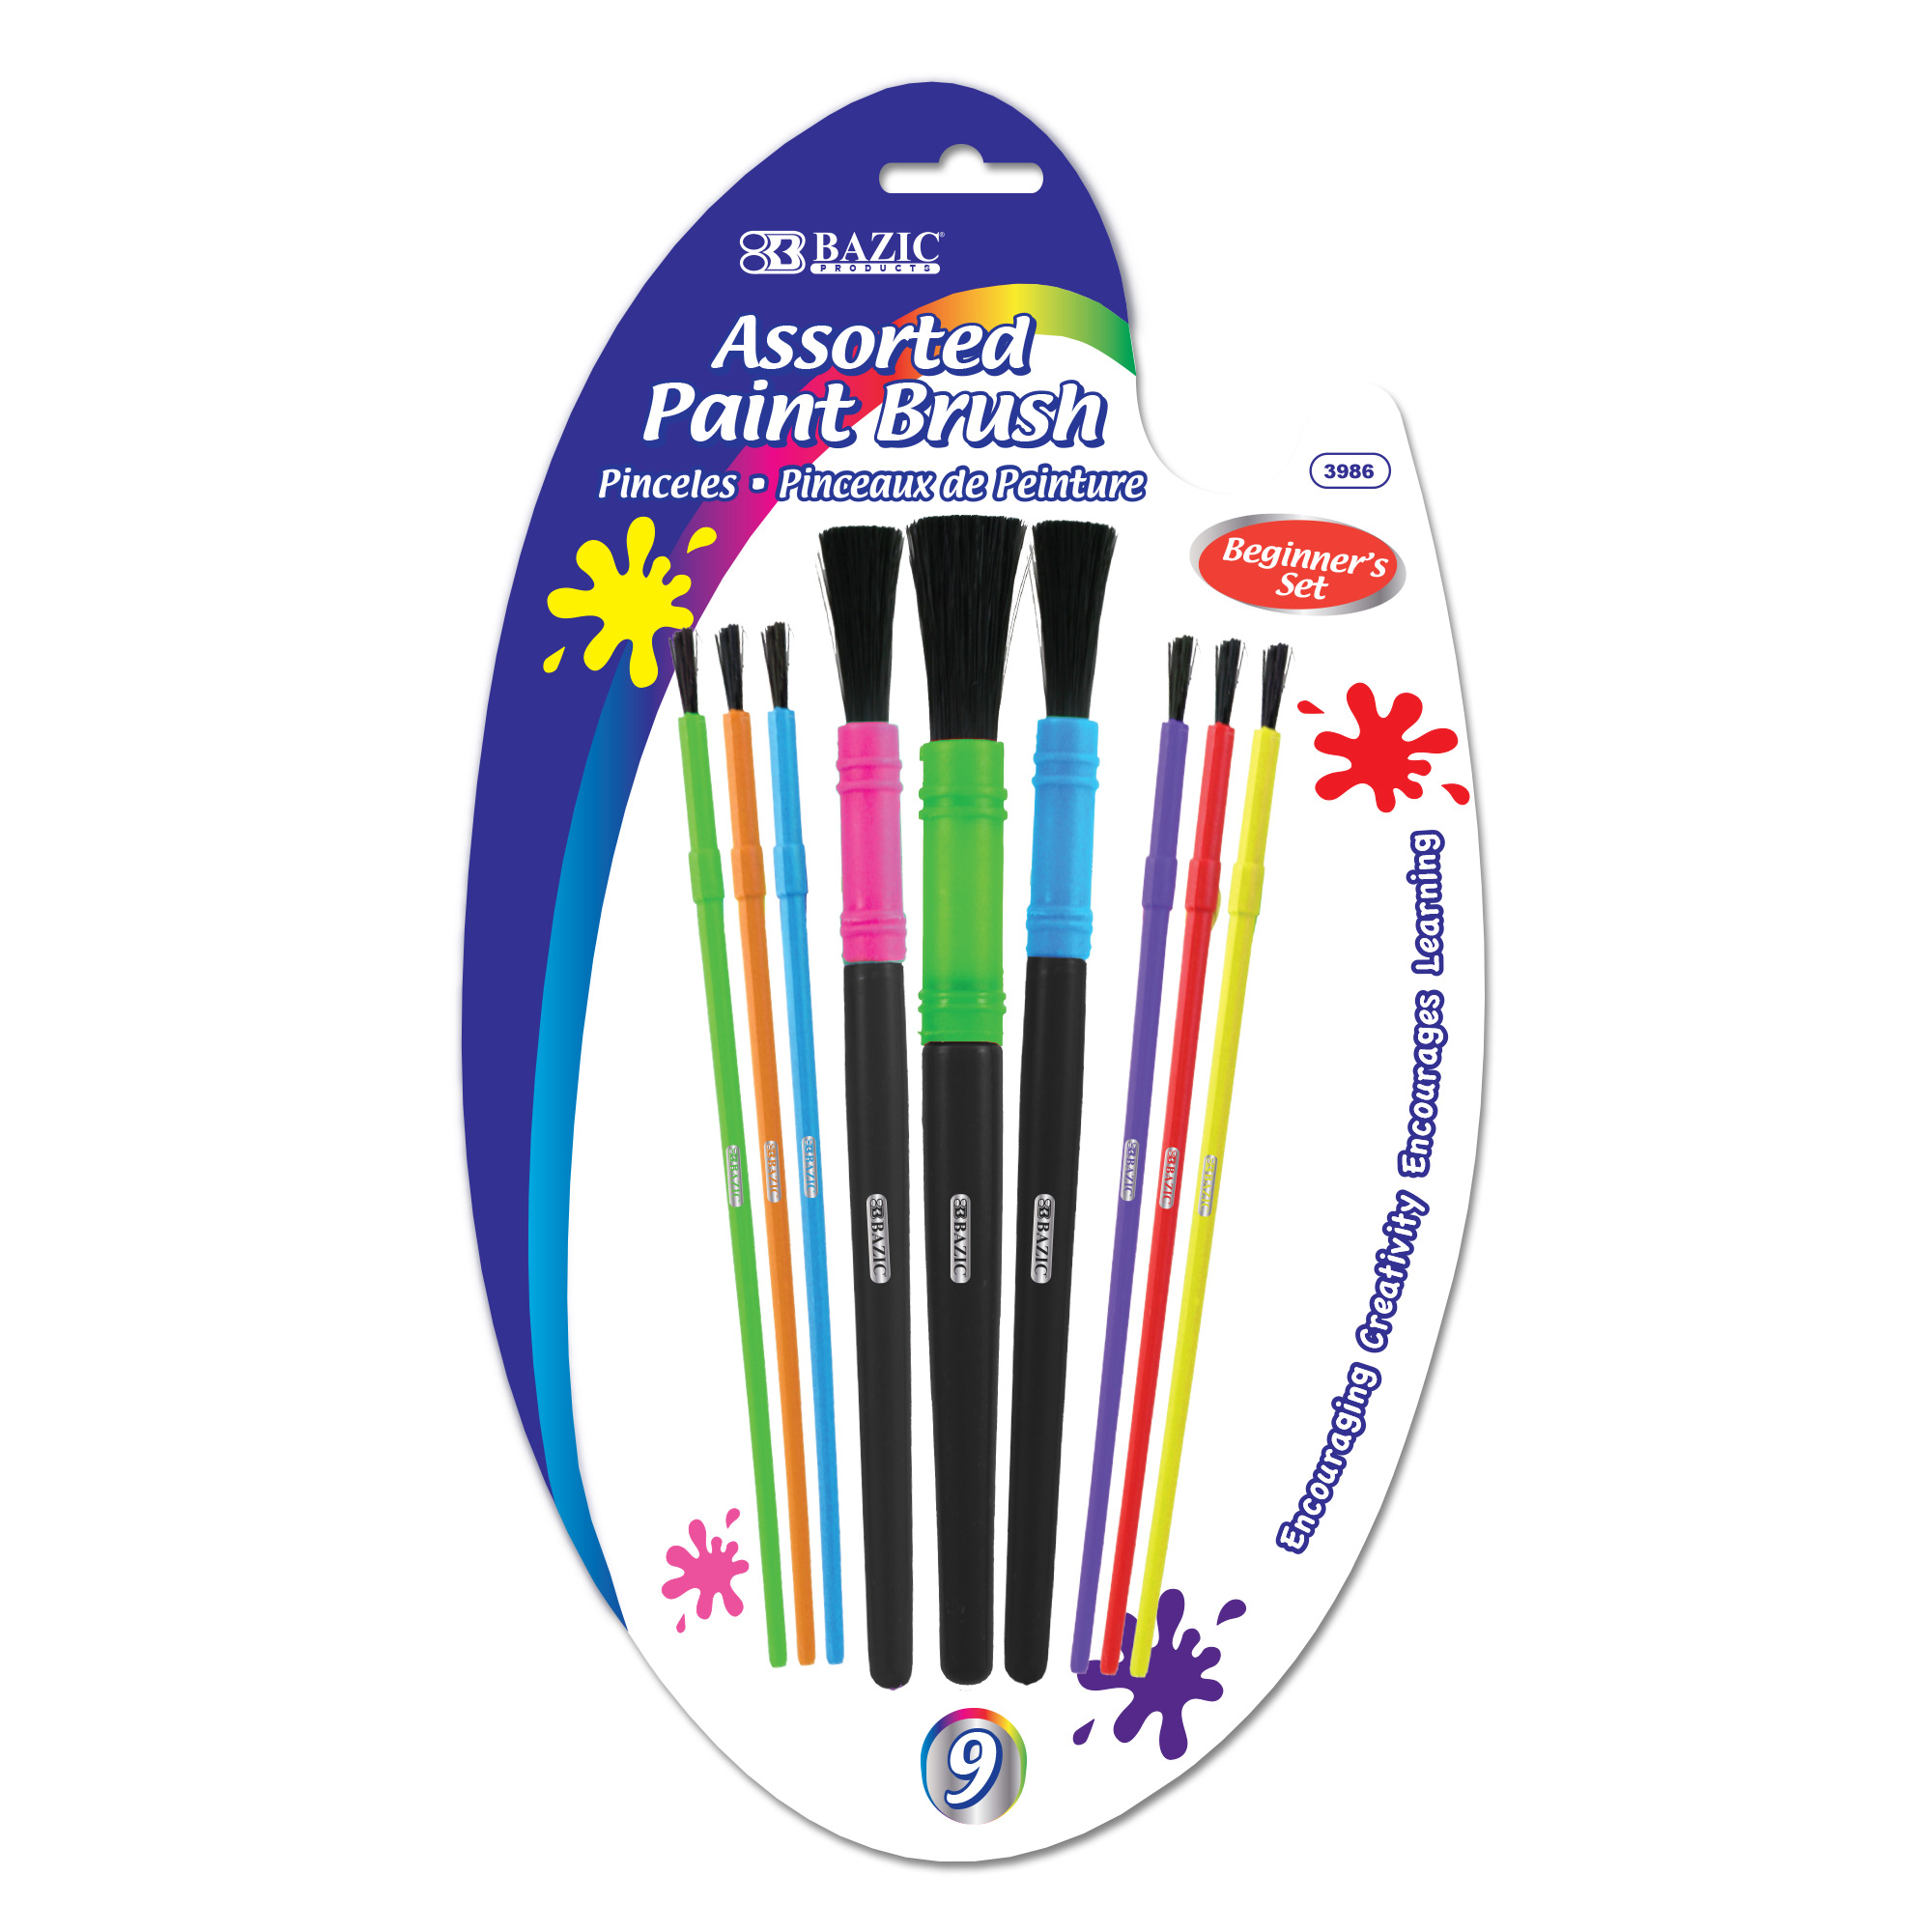 Future Kids Paint Brushes Set - 9313306070891